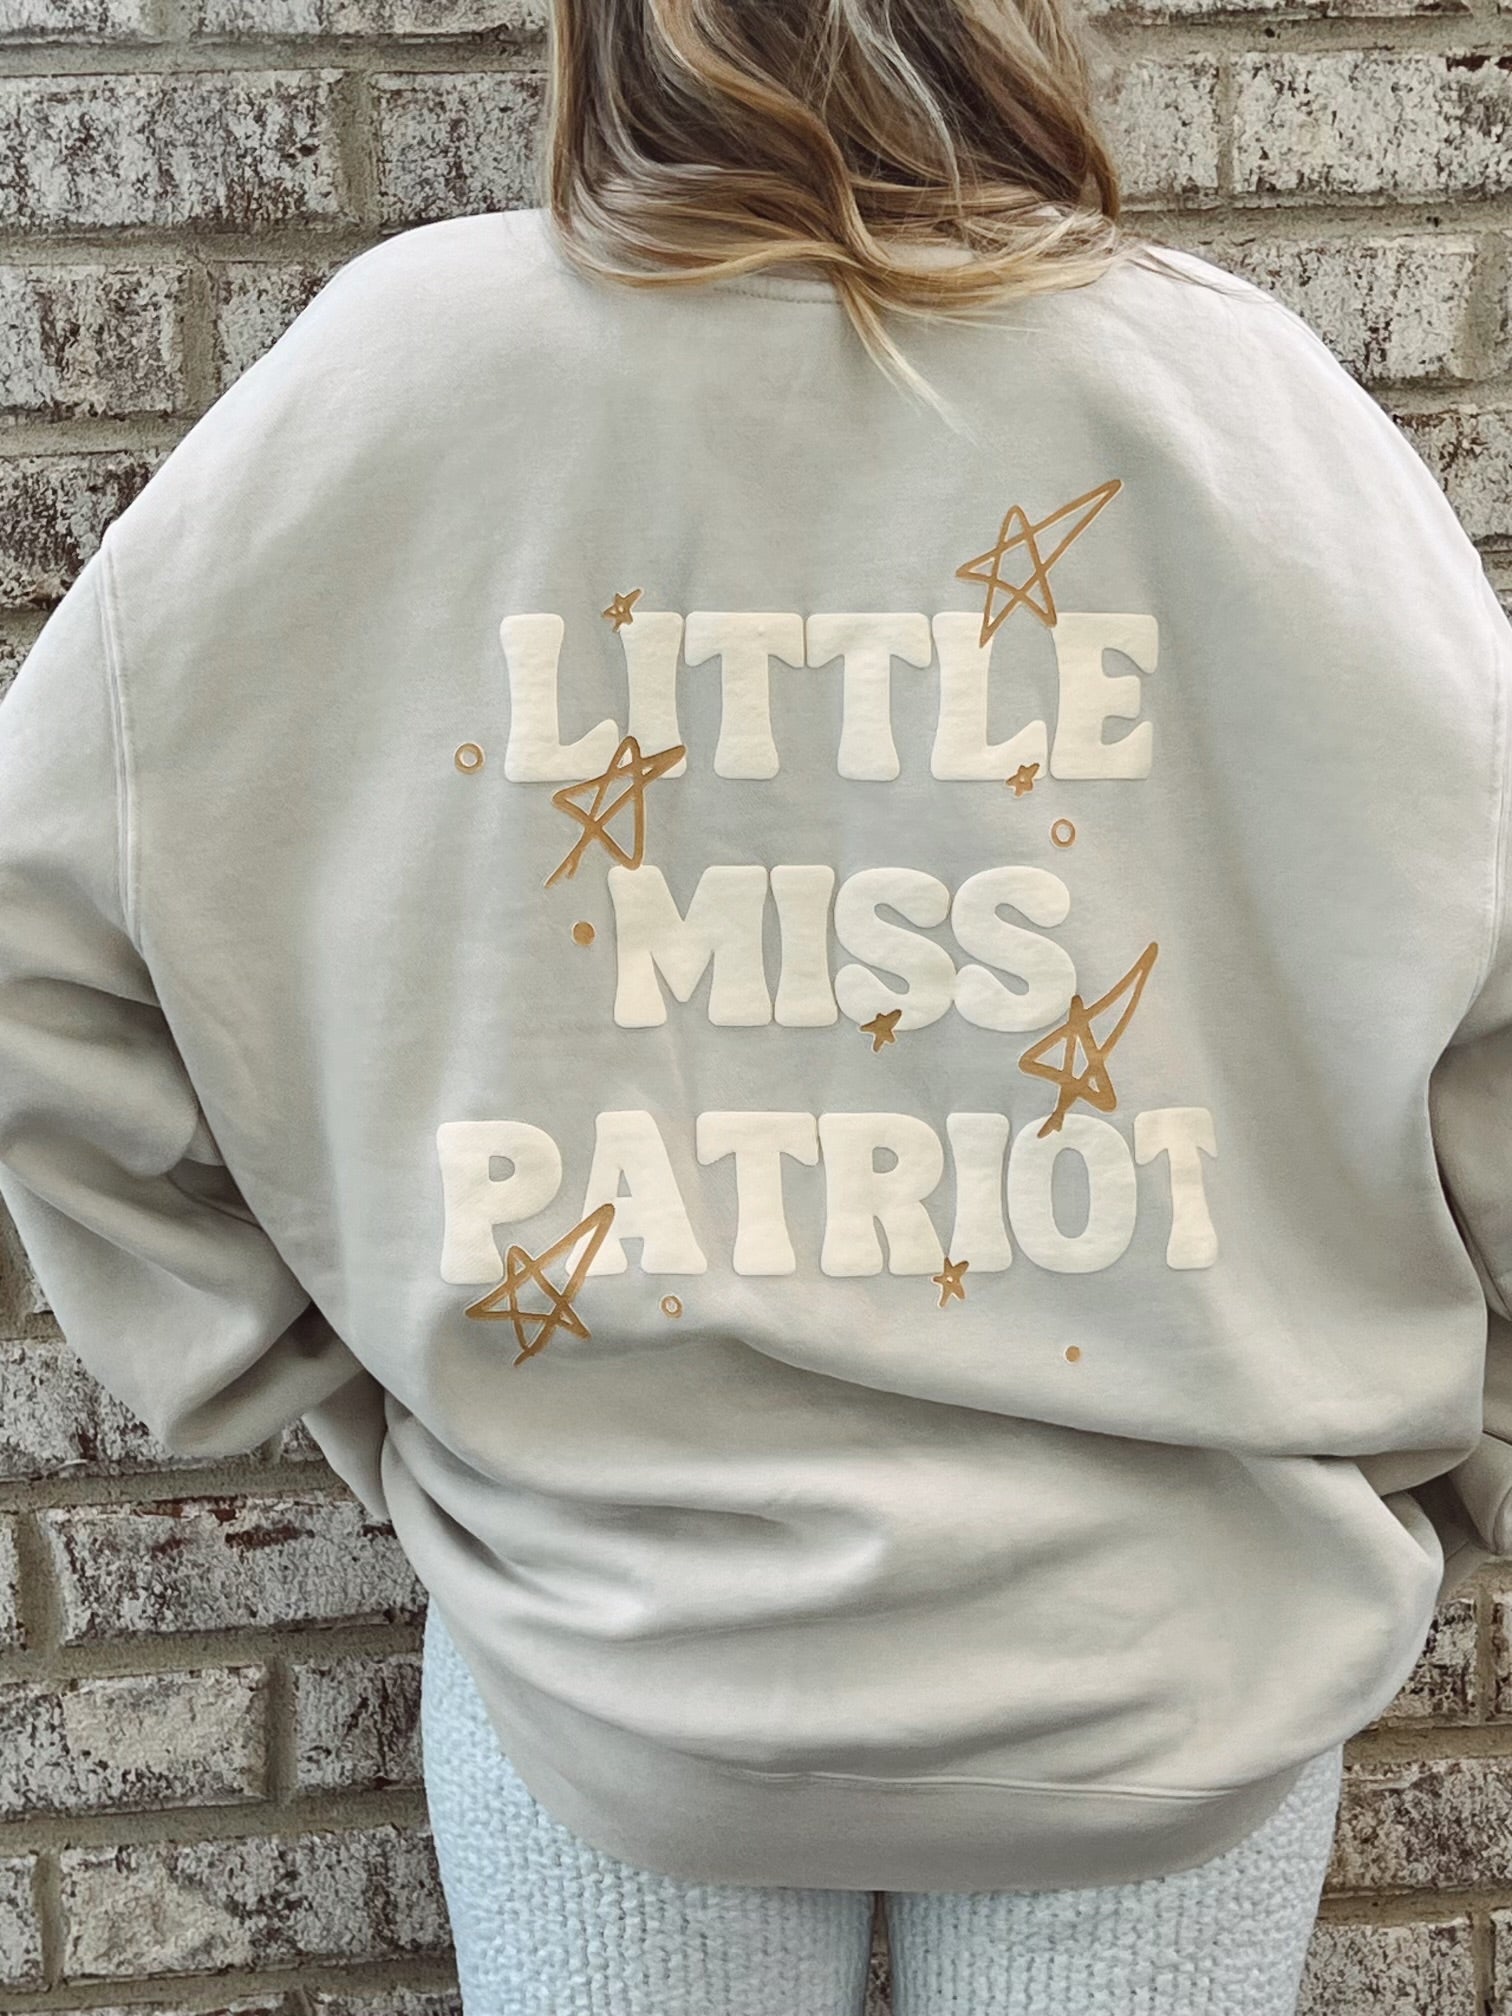 Lexie's "Little Miss Patriot" Crew